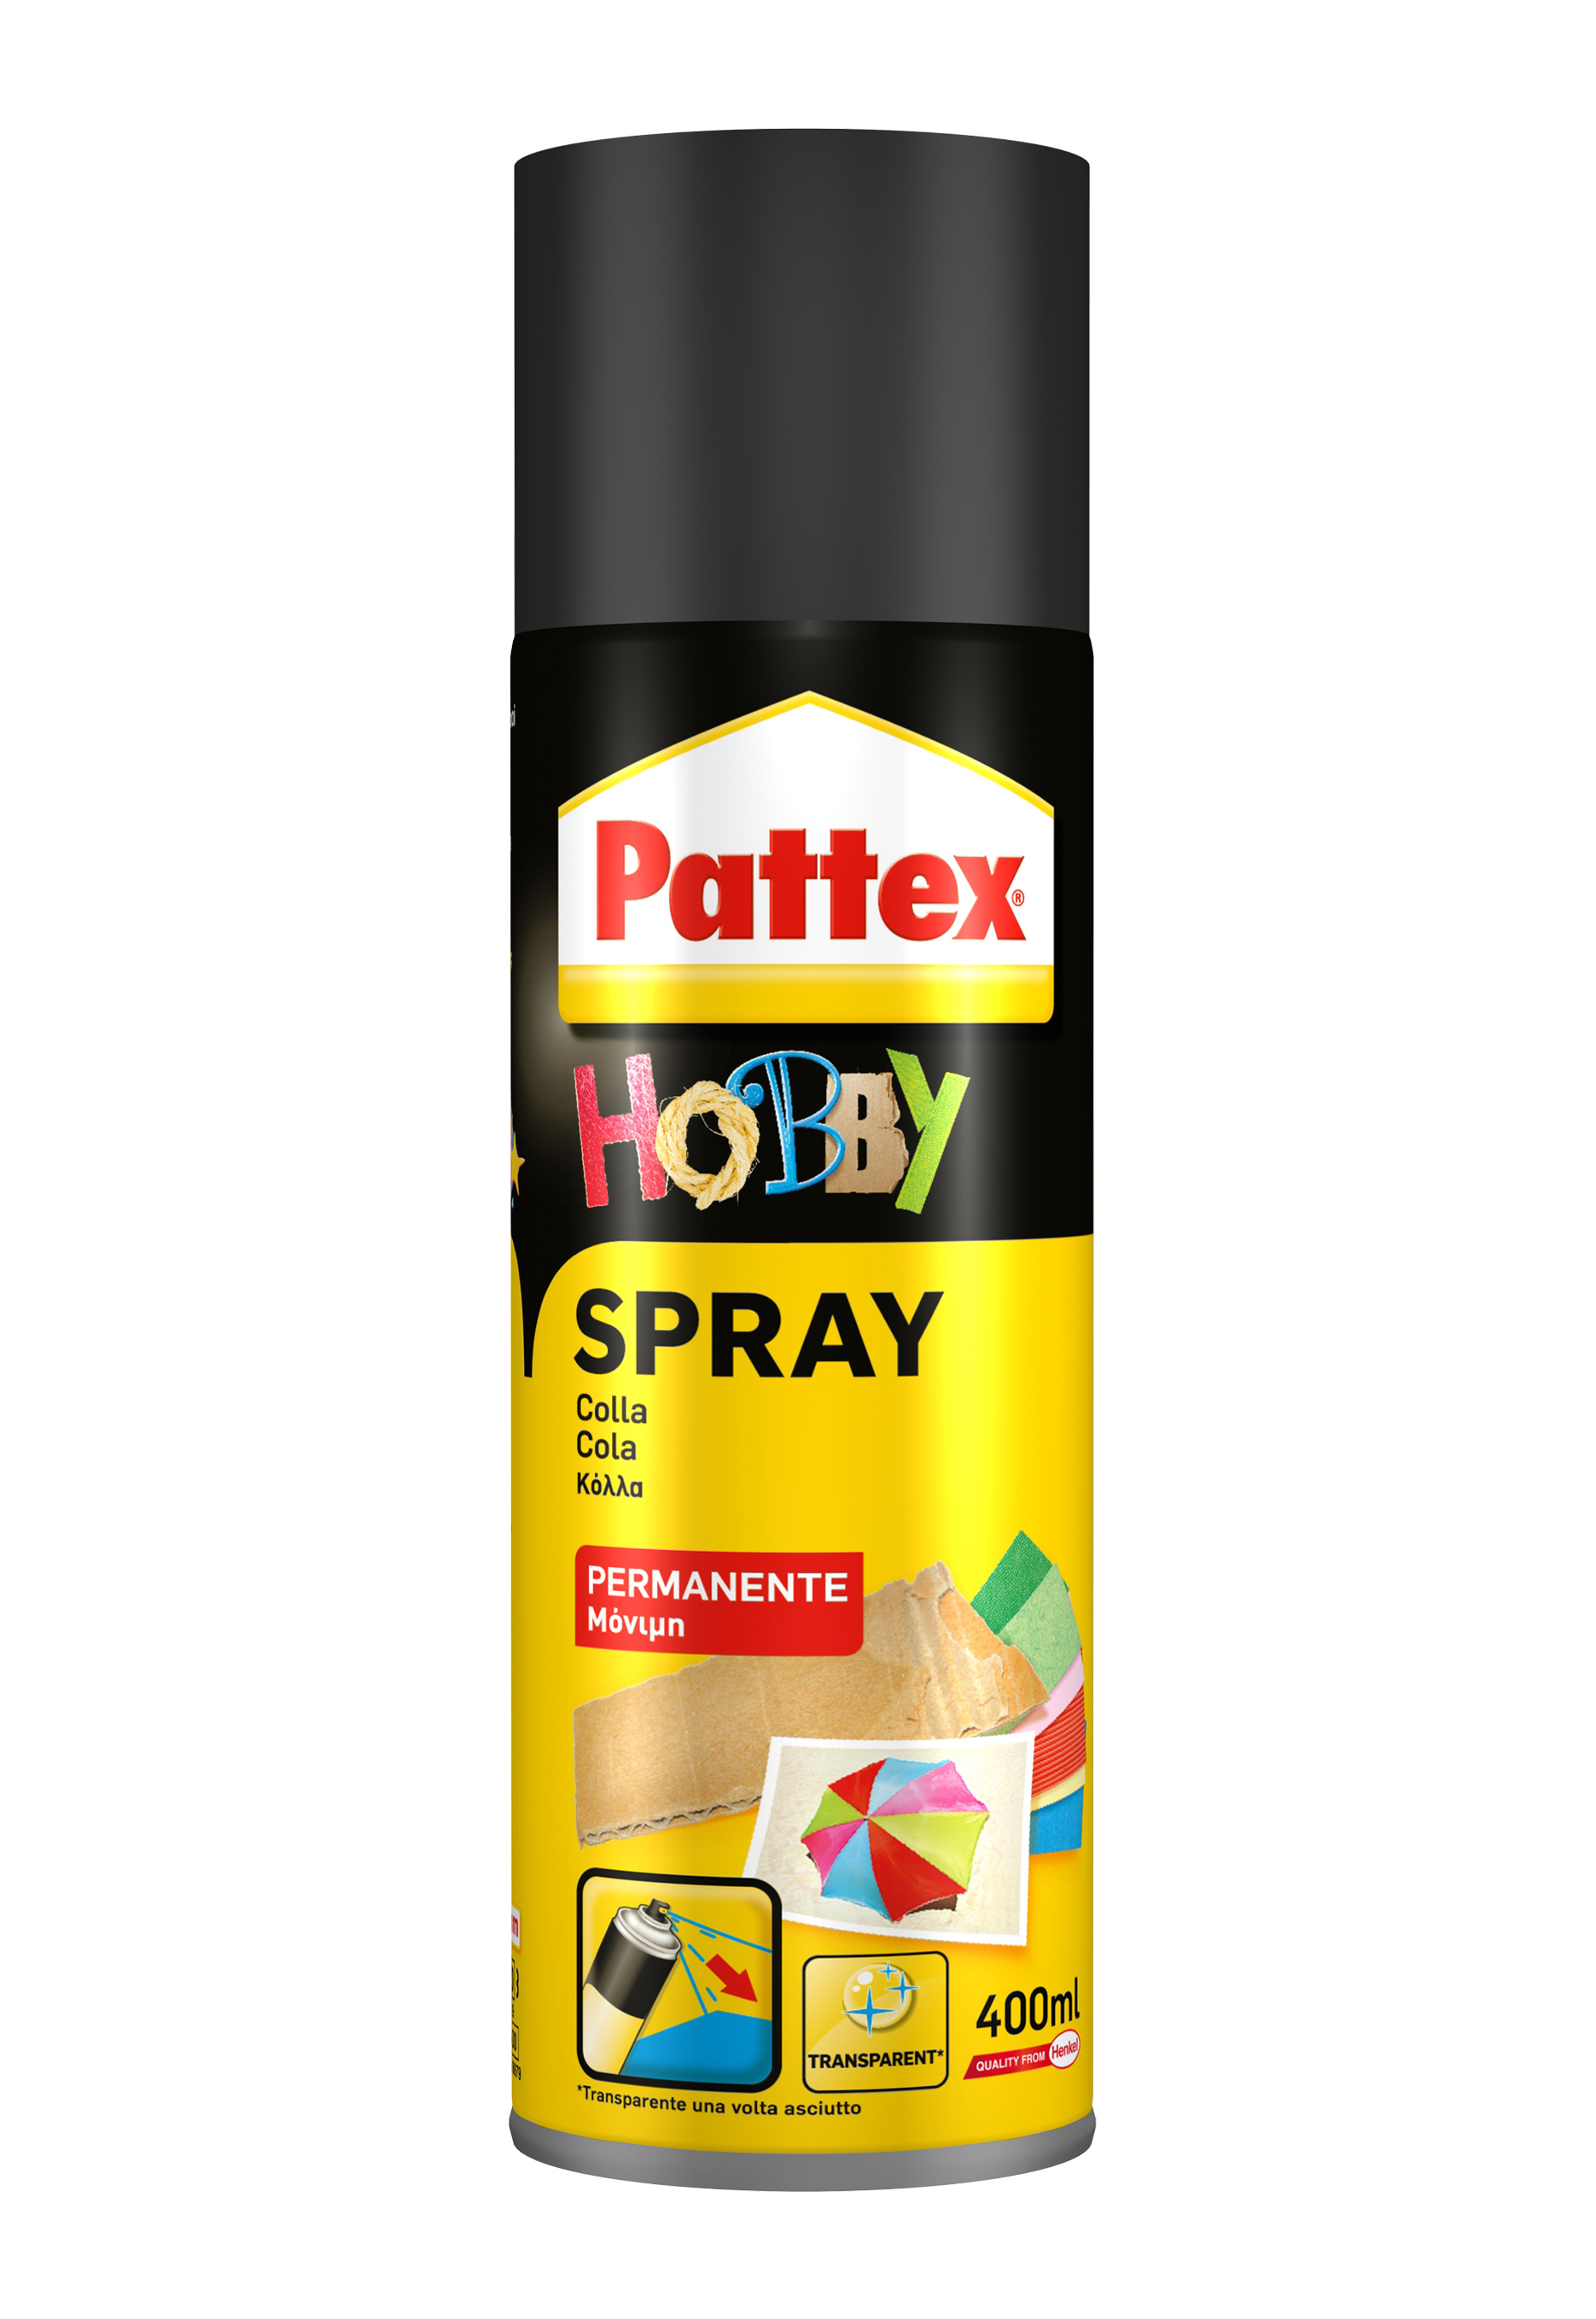 Pattex hobby spray 400ml